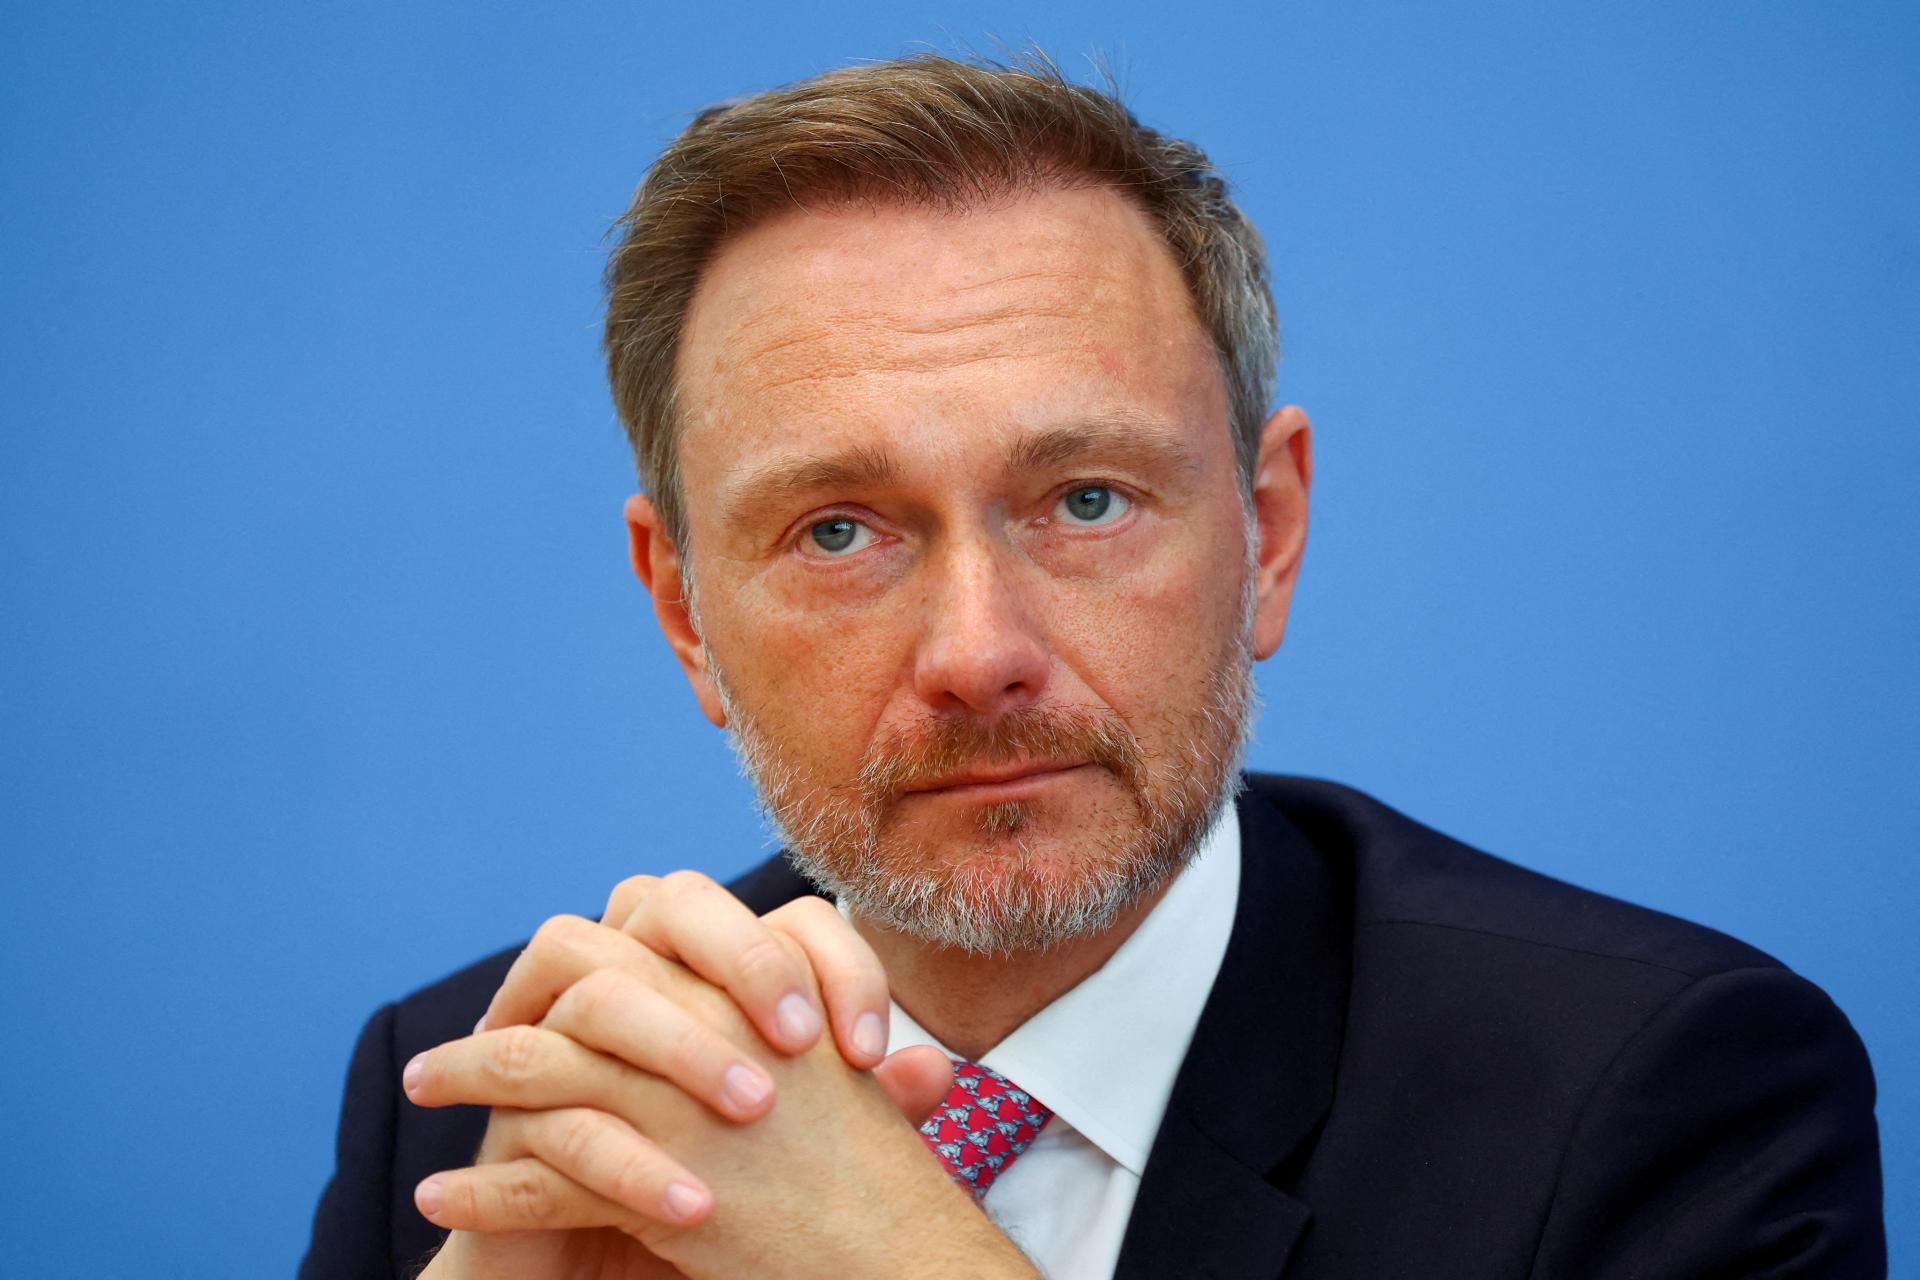 Nemecká ekonomika potrebuje posilniť konkurencieschopnosť, tvrdí minister financií